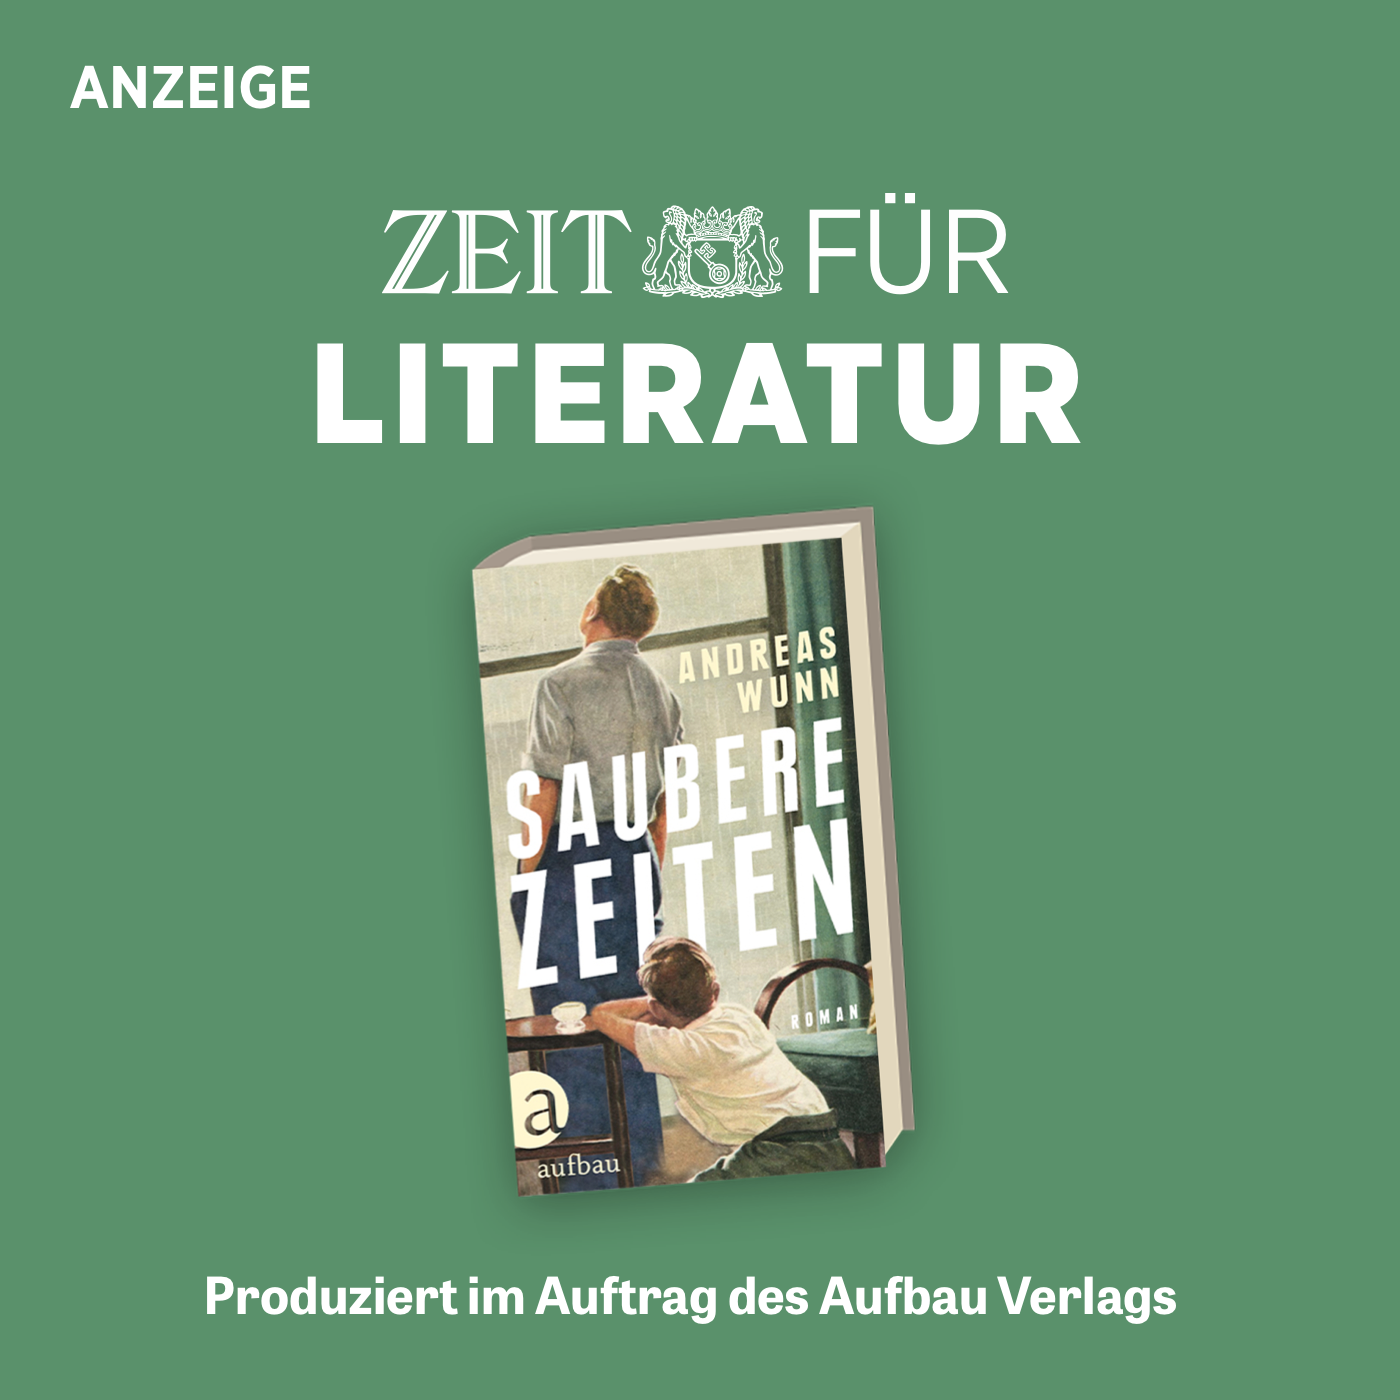 ZEIT für Literatur mit Andreas Wunn